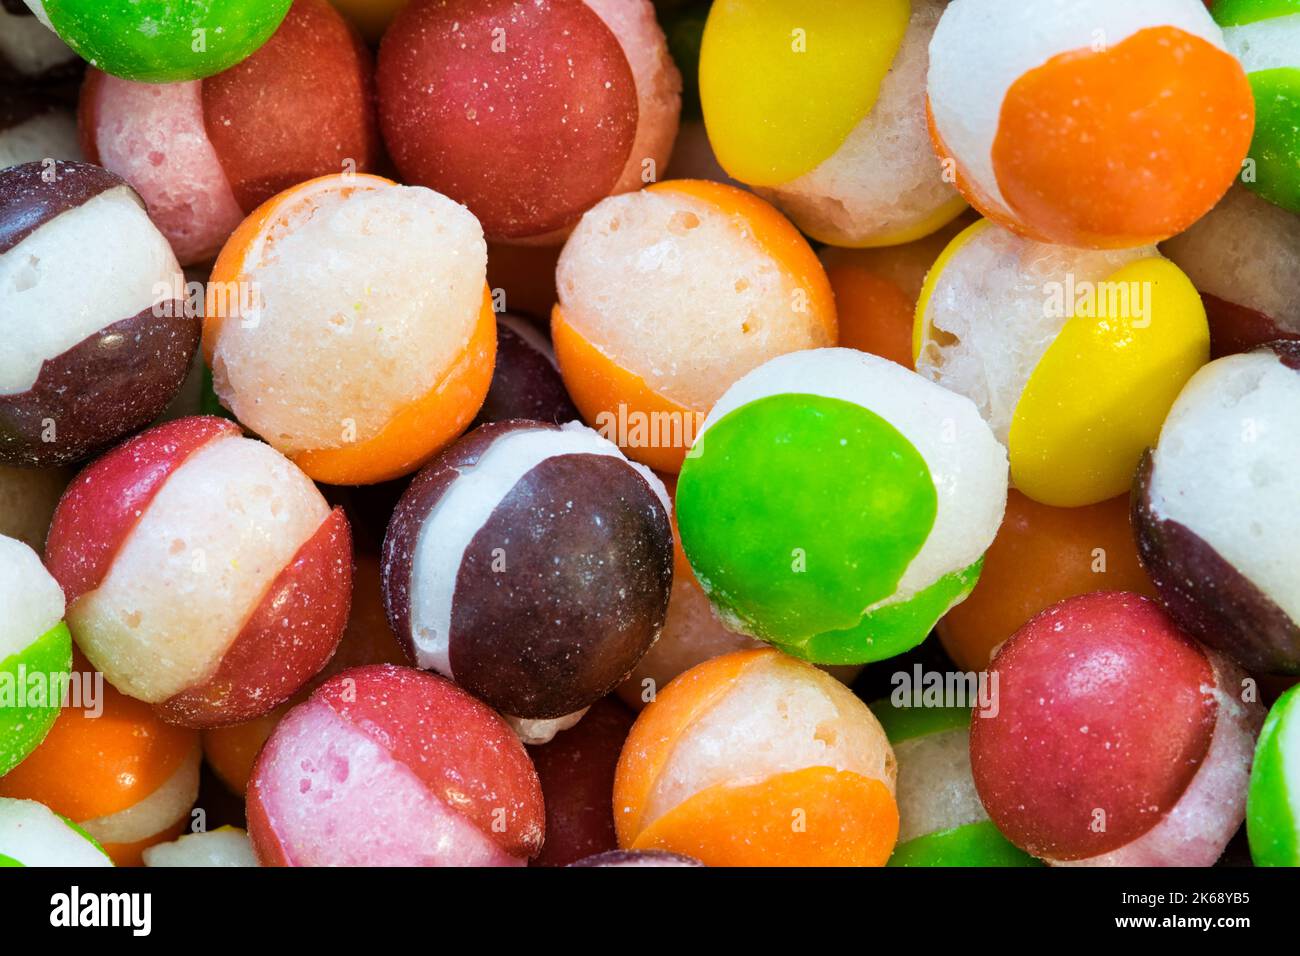 Congele el caramelo duro seco con las divisiones a través de sus centros. Colorido fondo de comida dulce. Foto de stock